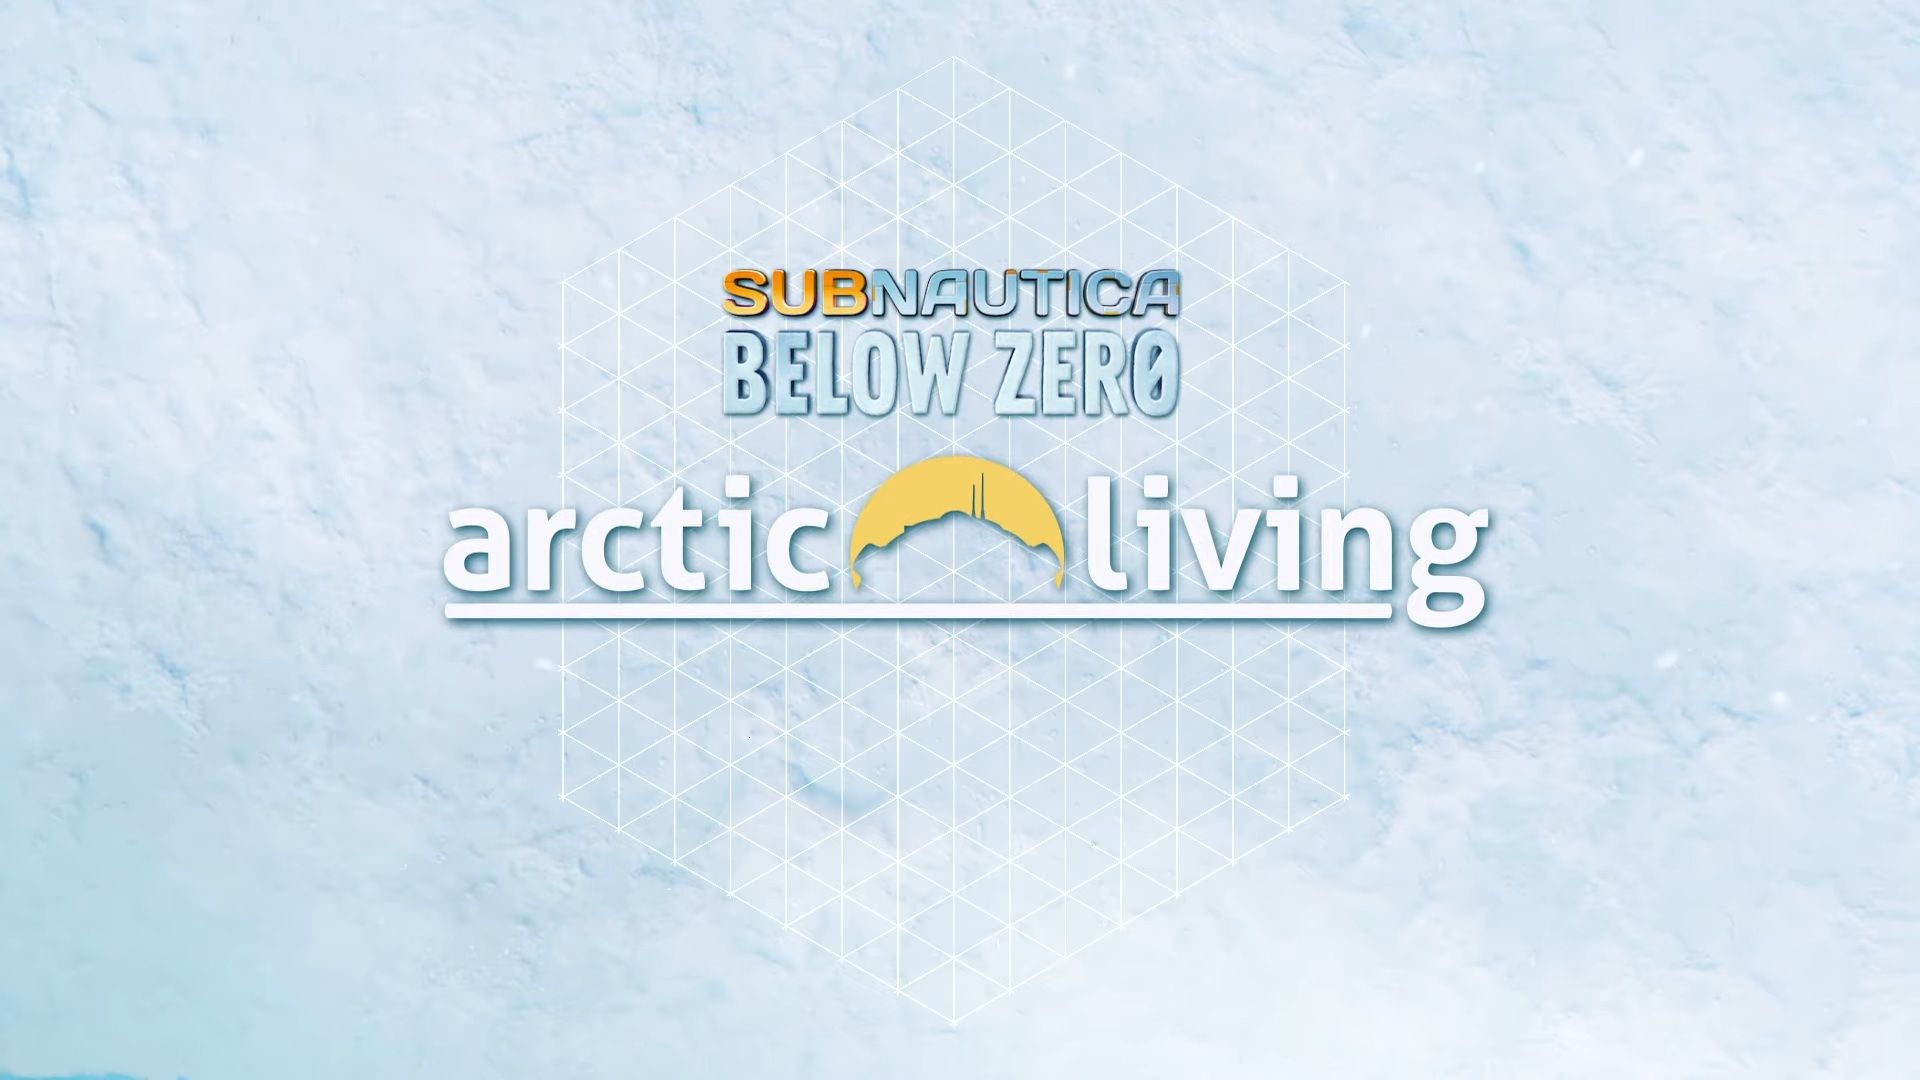 Subnautica: Below Zero Arctic Living update details